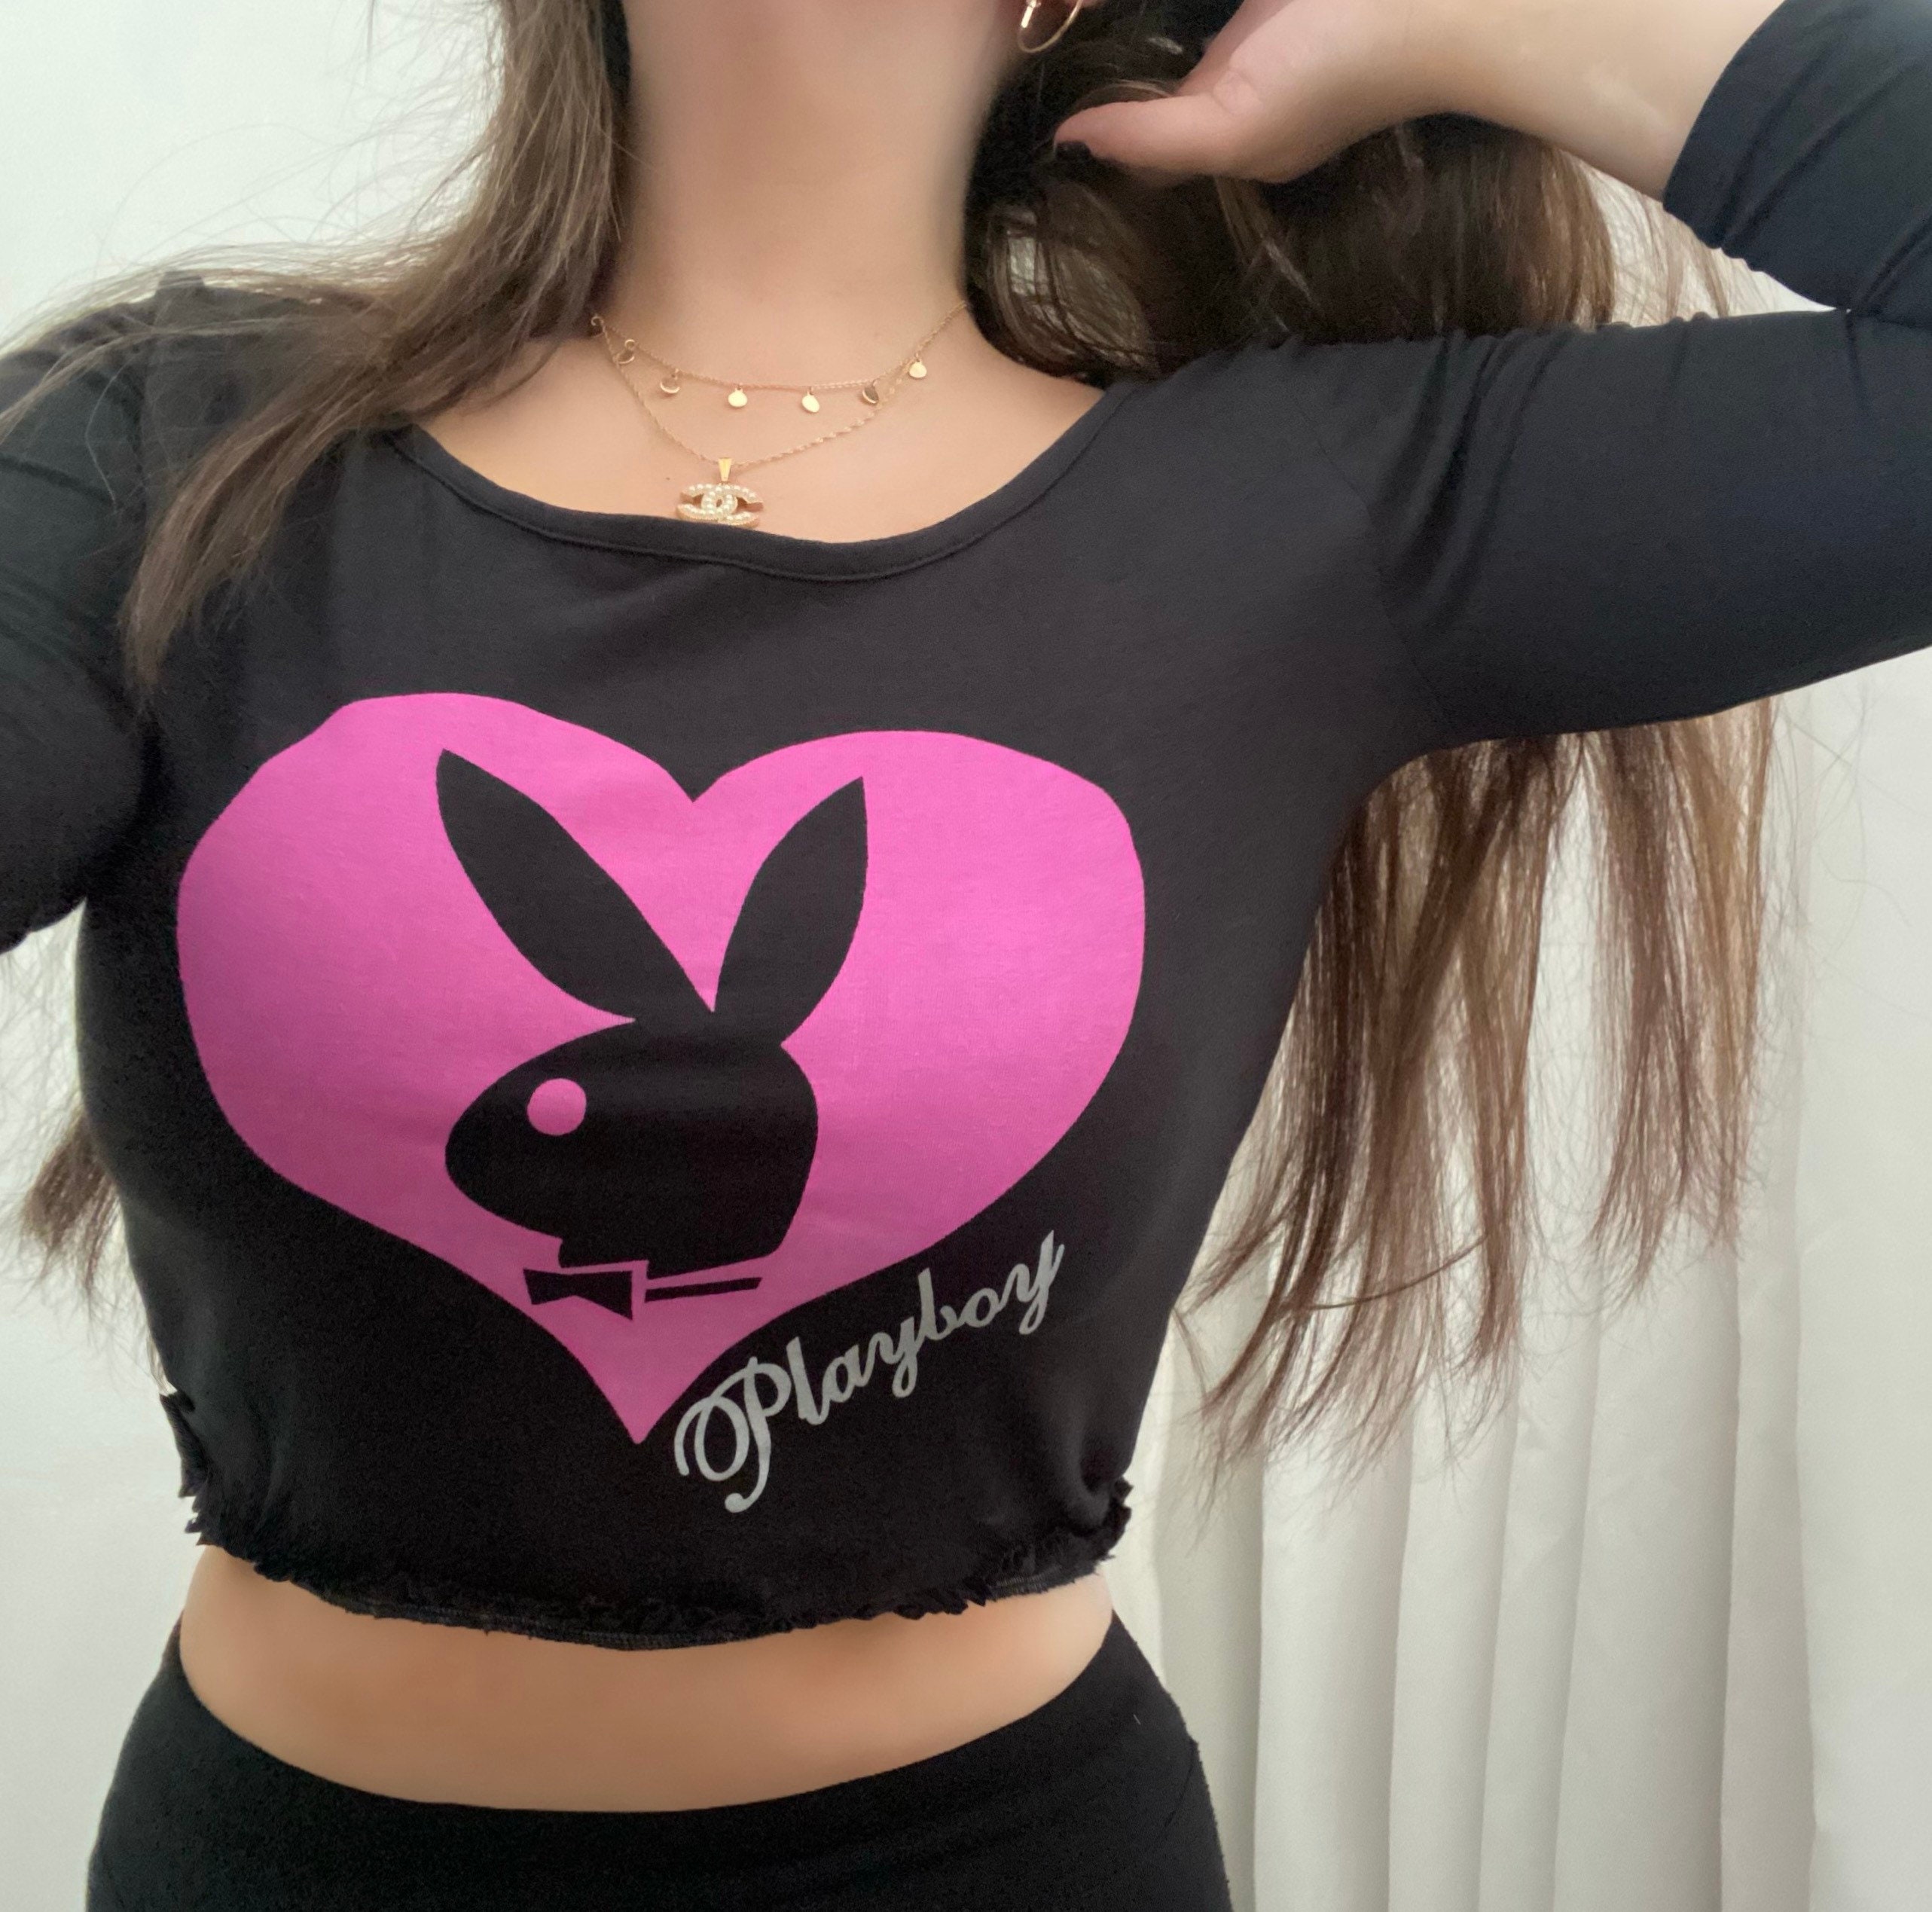 Hus Indtil nu kat Y2K Playboy Long Sleeve Crop Top Black Scoop Neck With Hot - Etsy